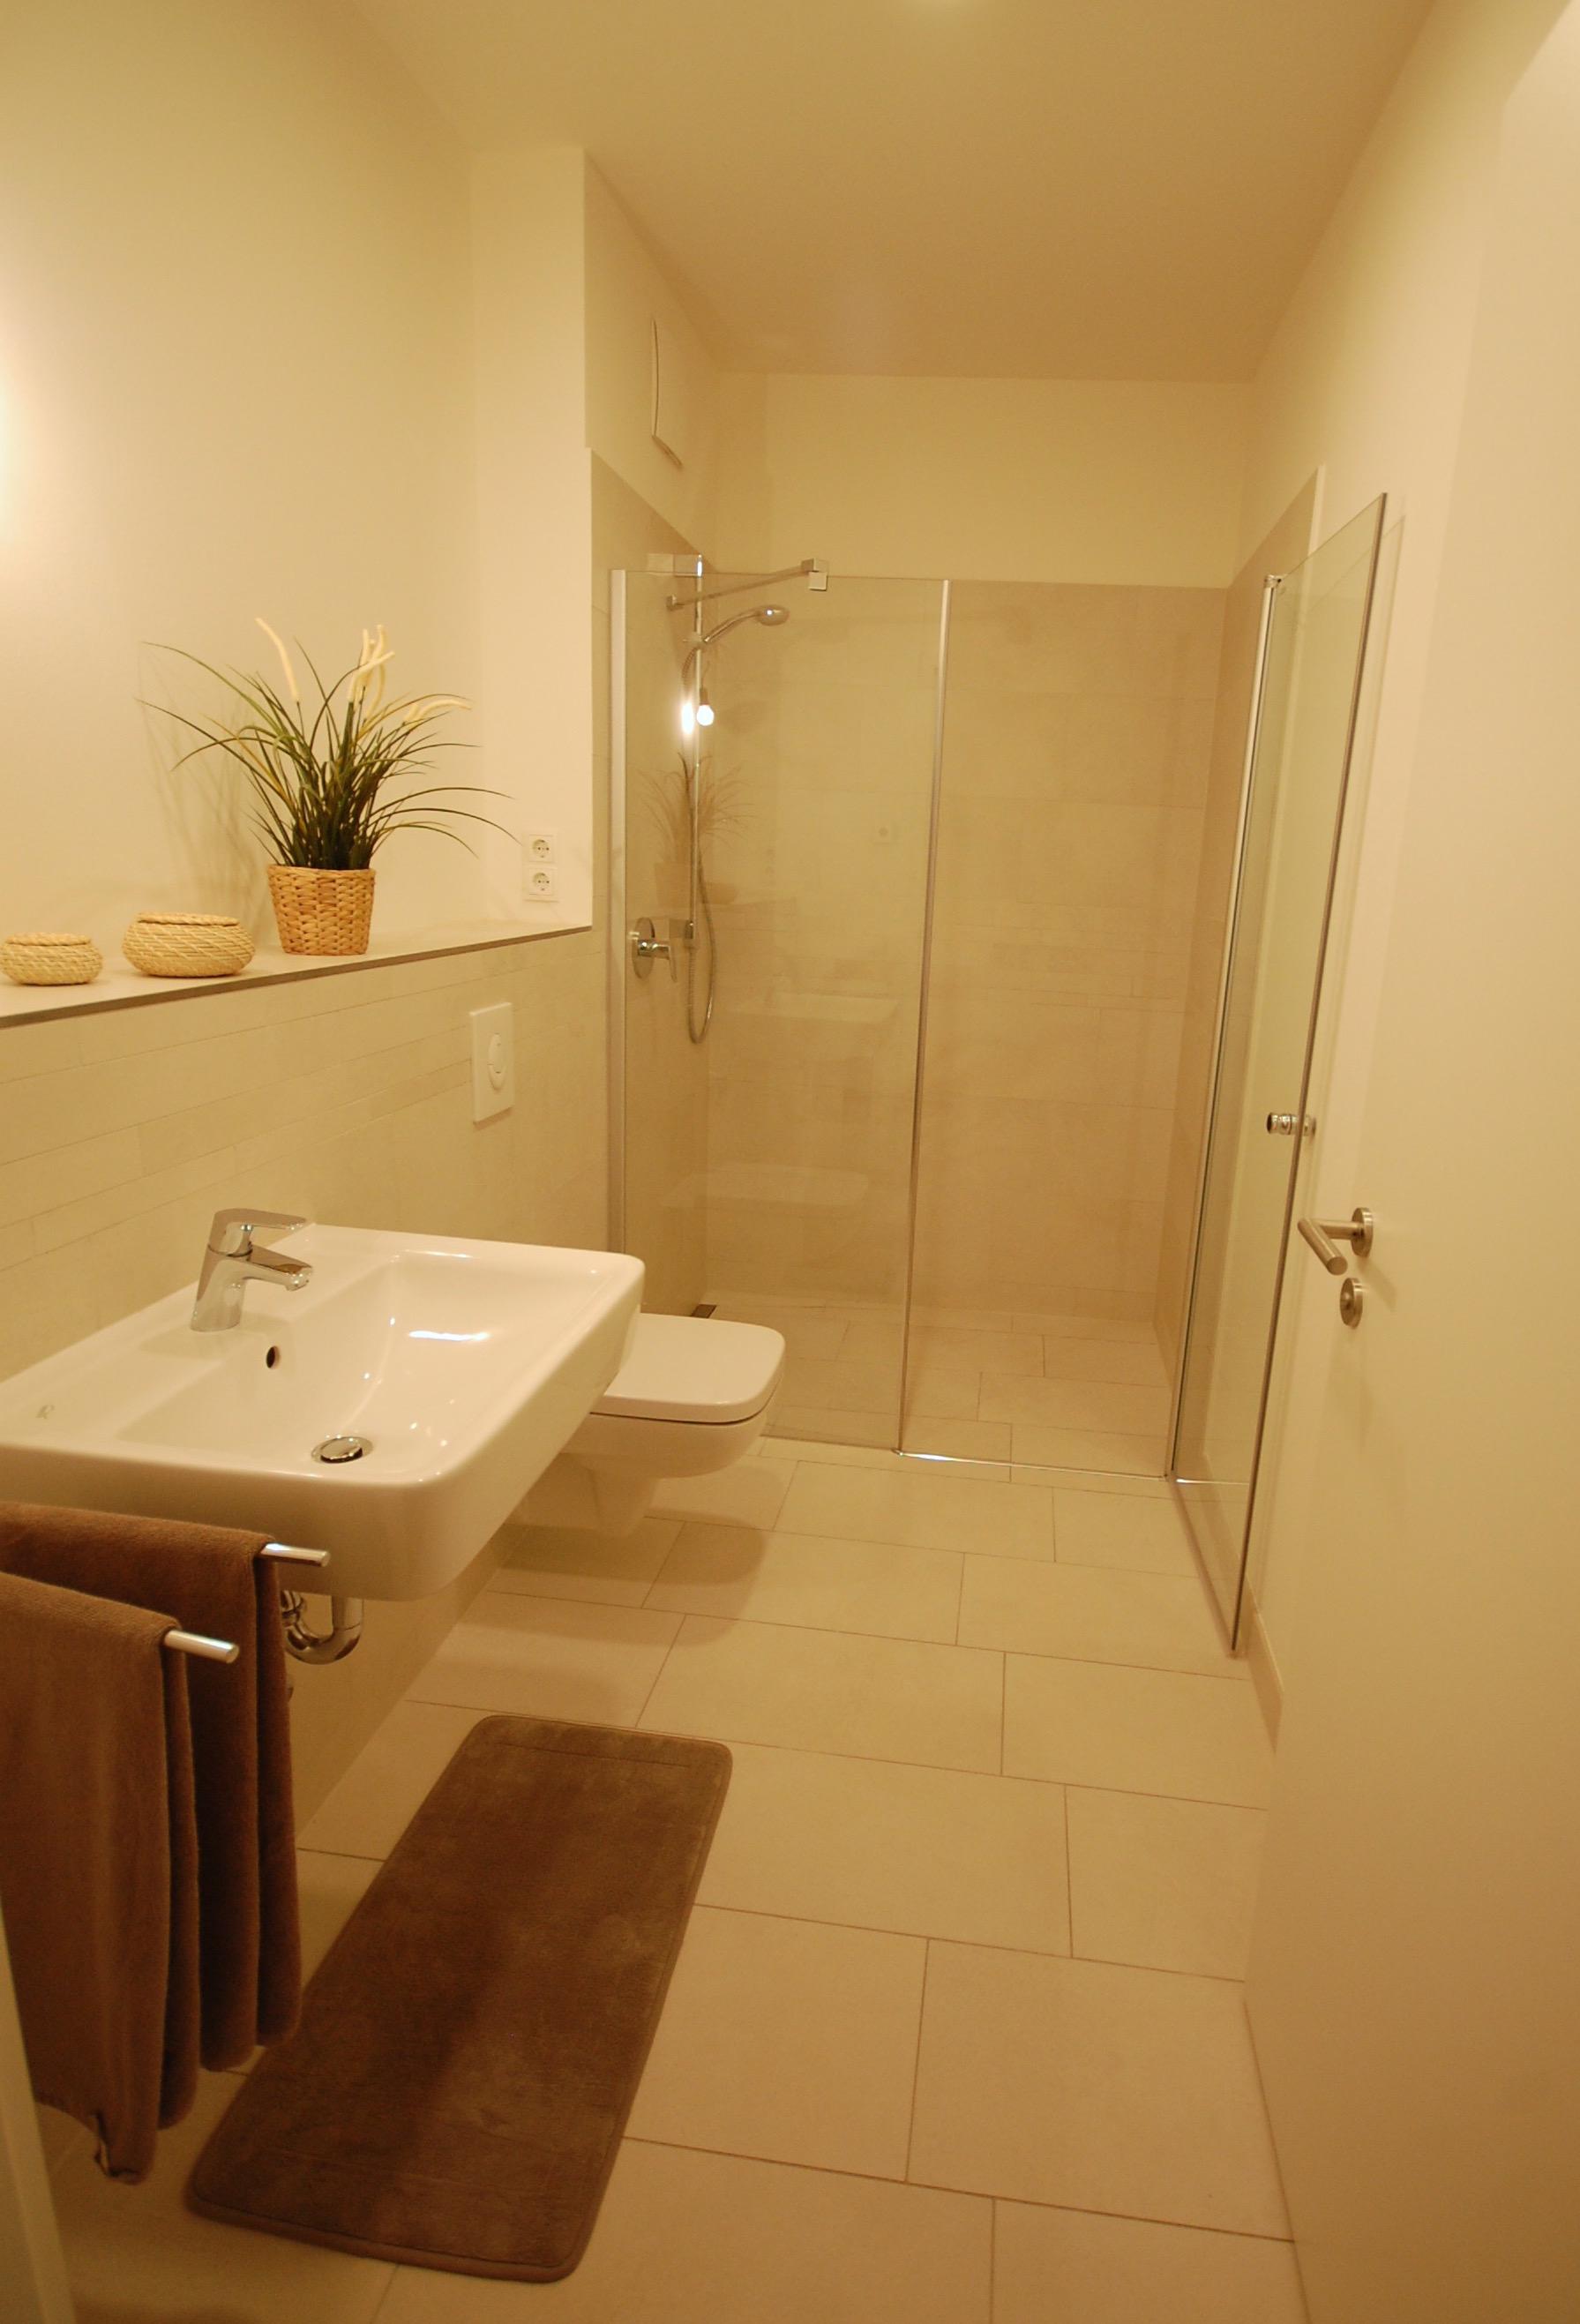 Badezimmer mit Dusche und Wanne #badezimmer ©Miarcle Room